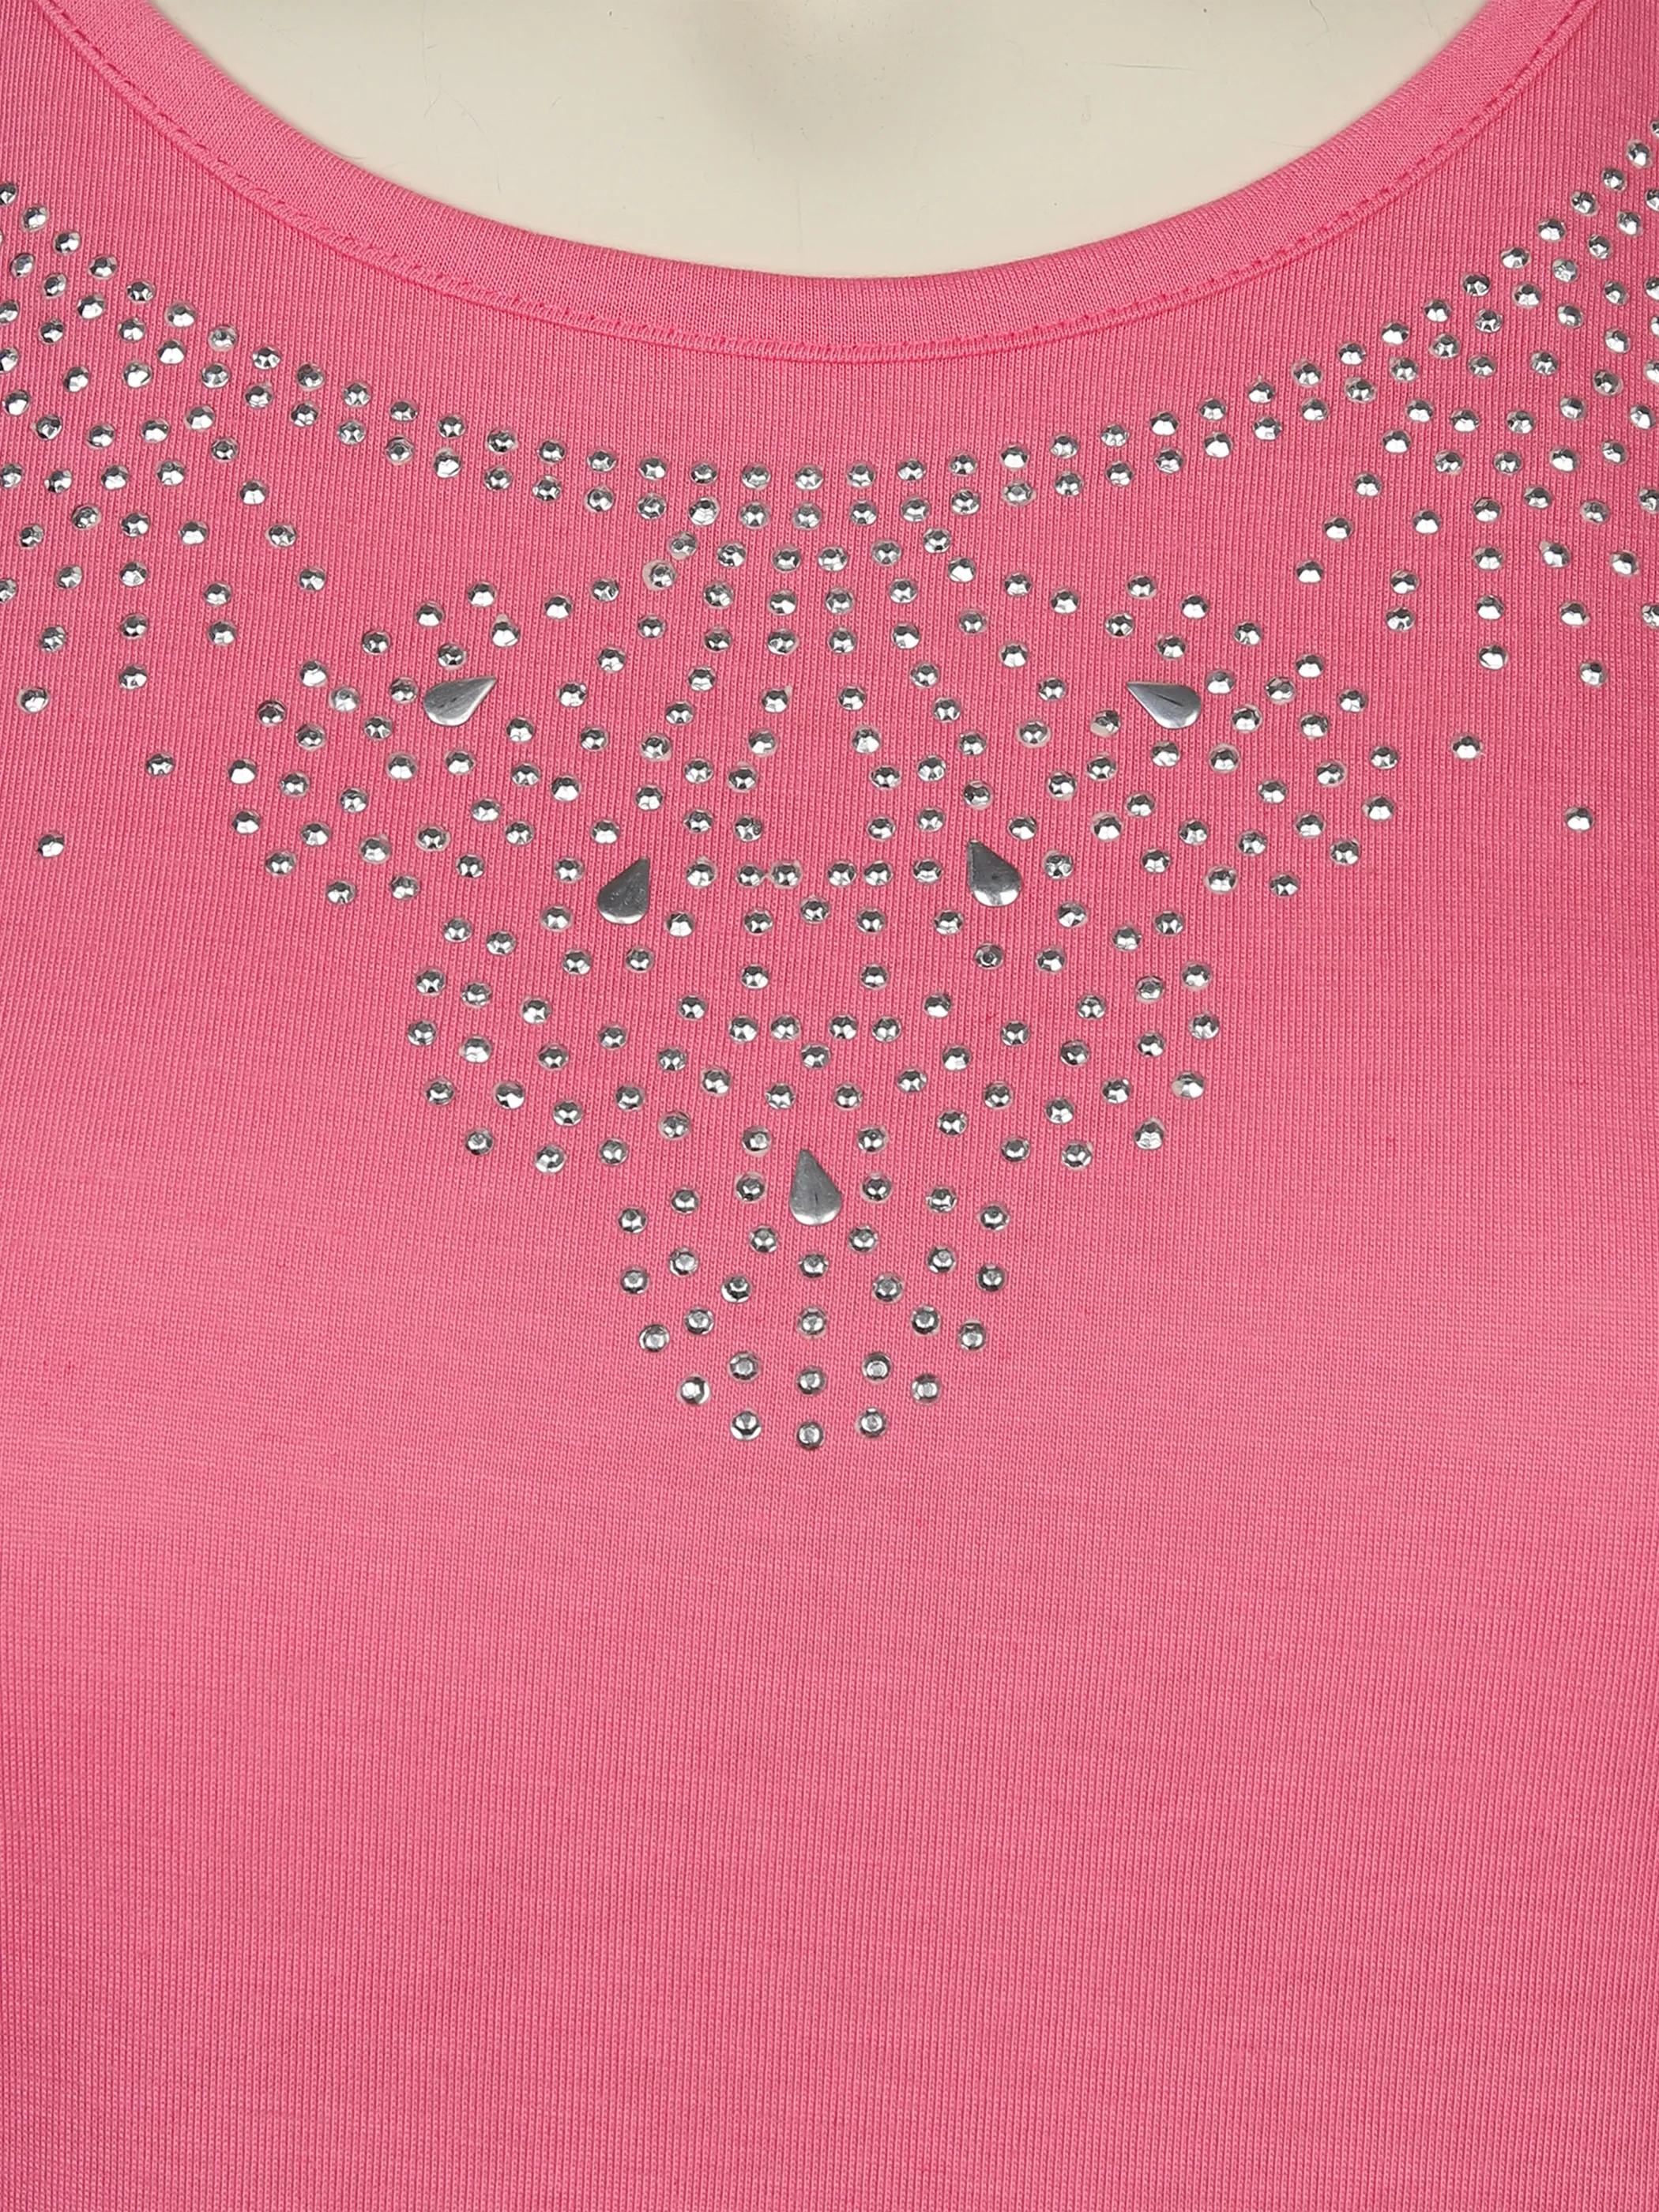 Sonja Blank Da-gr.Gr.T-Shirt m.Strassapplikation Pink 876189 PINK 3